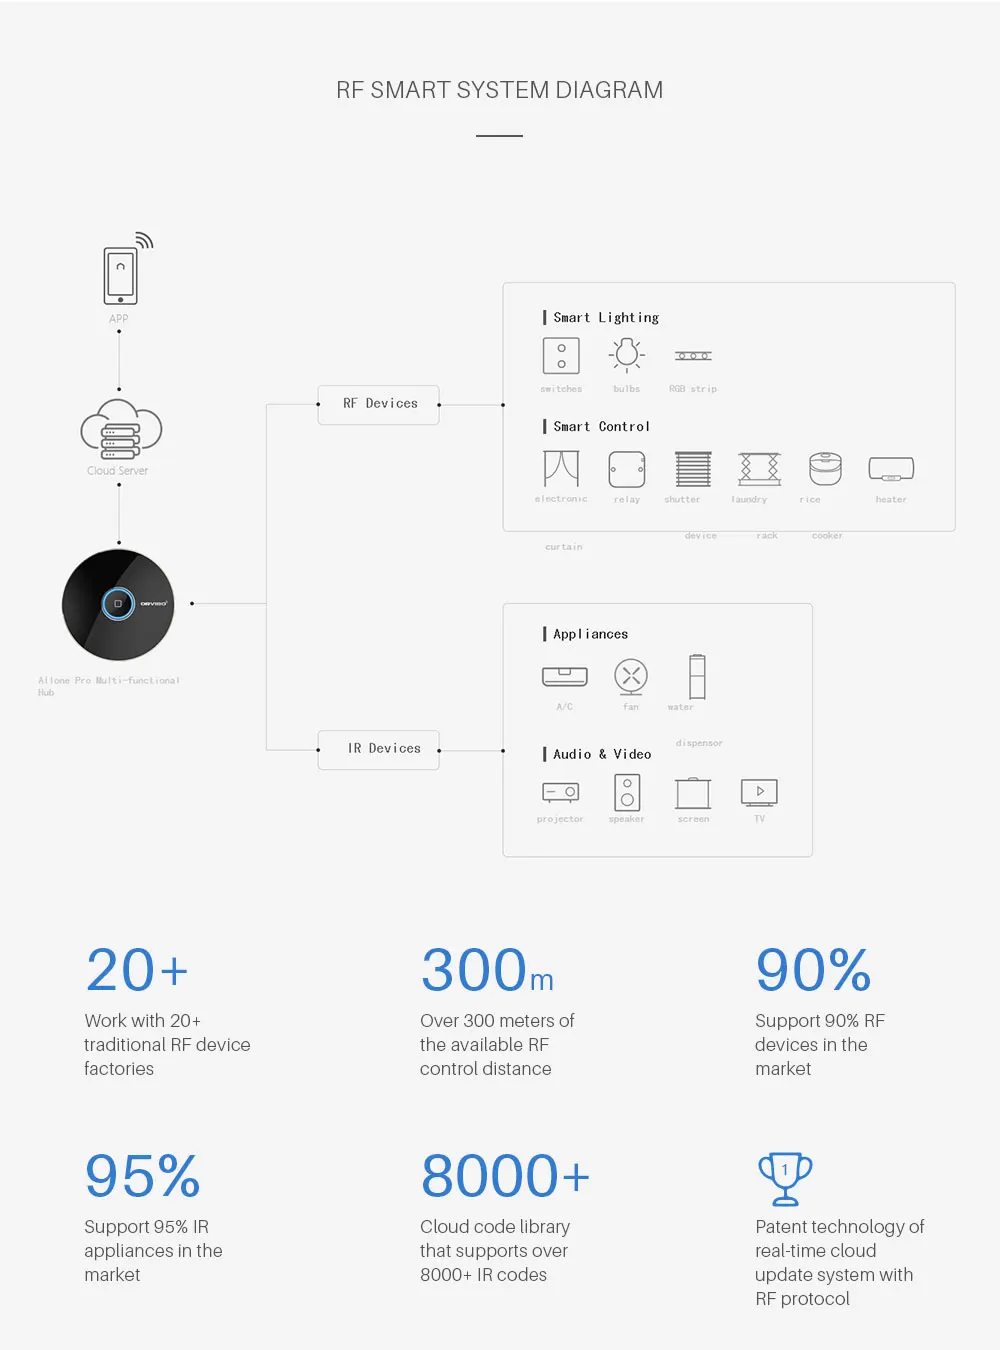 Orvibo Allone Pro Универсальный Интеллектуальный радиочастотный ИК-пульт дистанционного управления работает с Amazon Echo Alexa Google Home для автоматизации умного дома